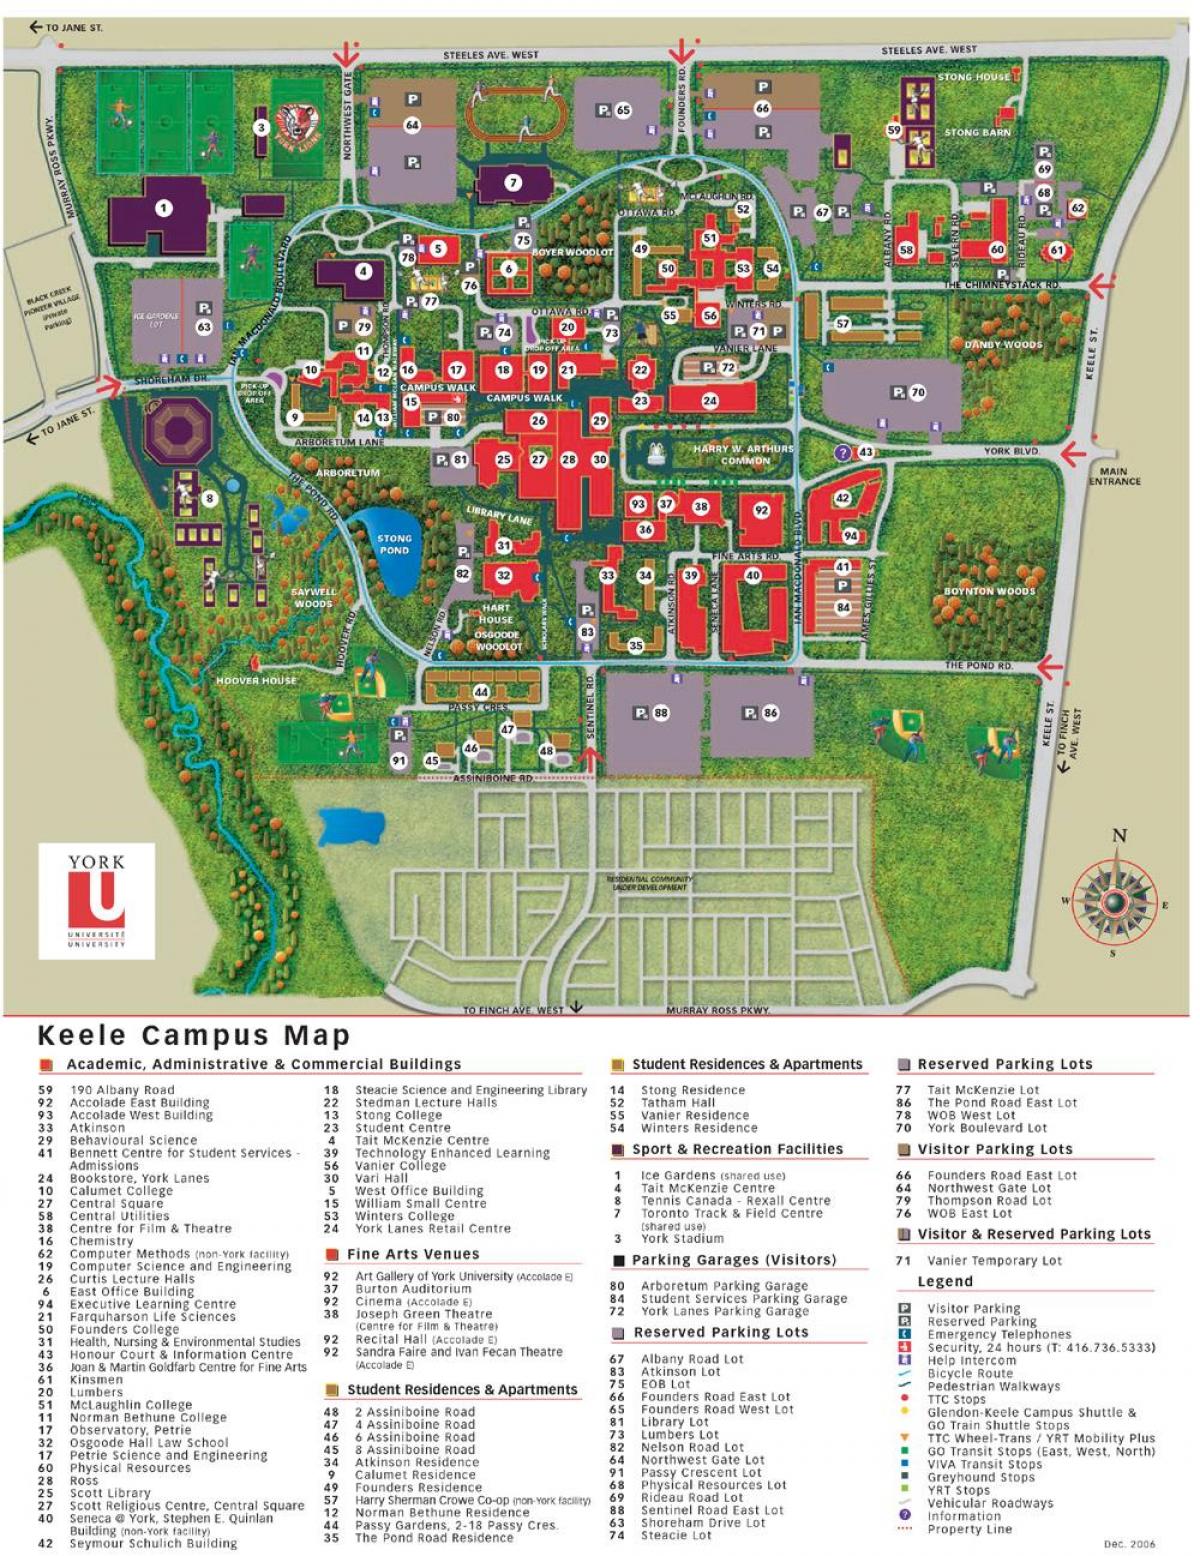 Mapa York univerziteta keele kampusu